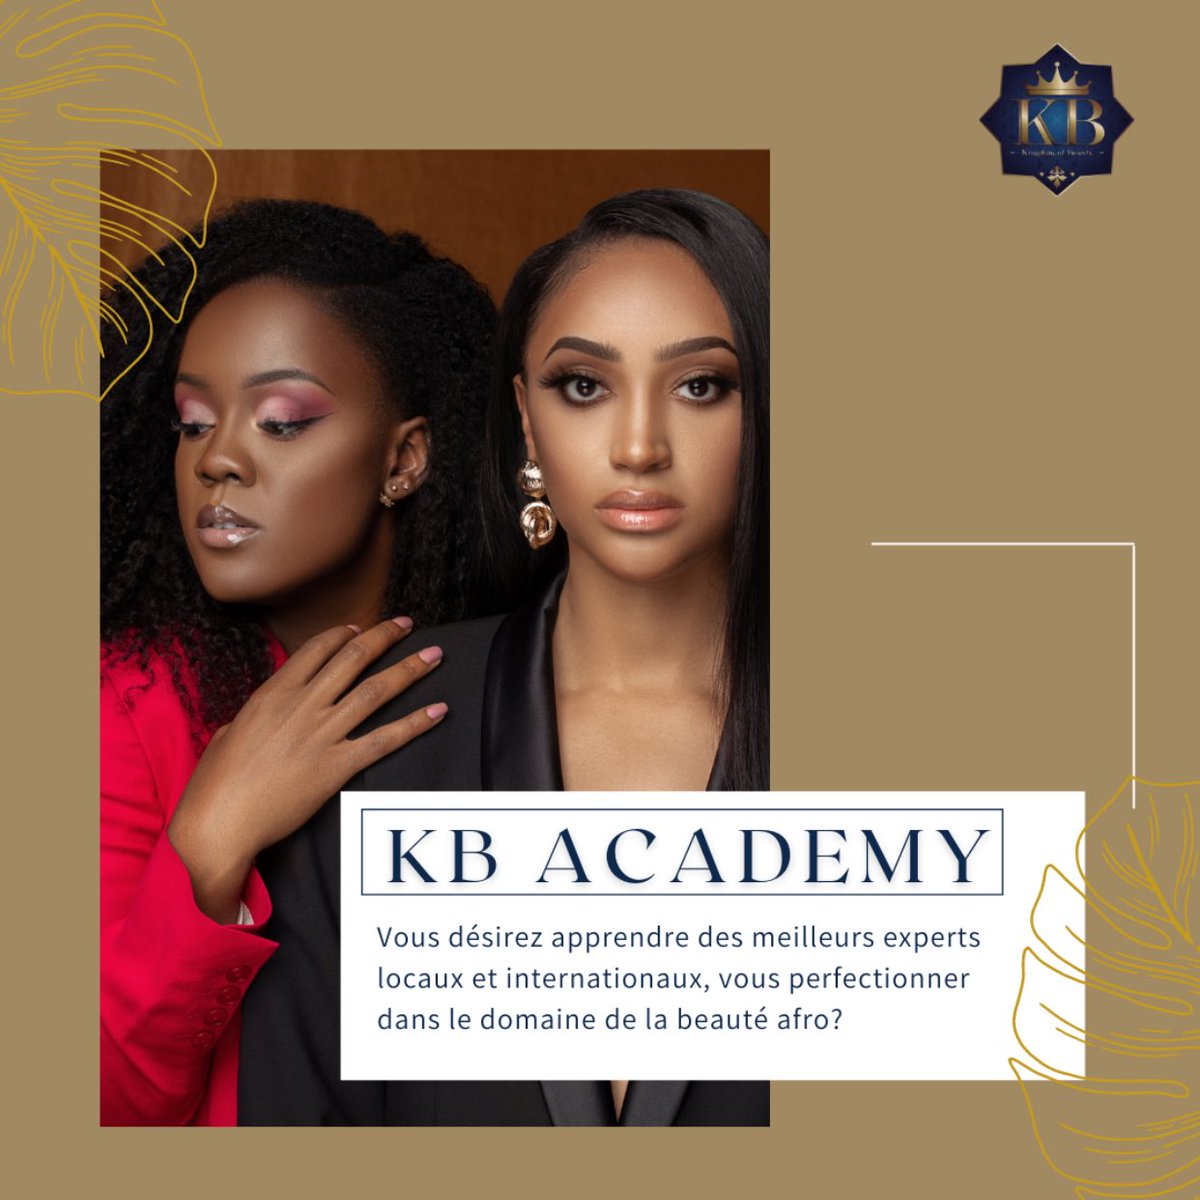 Première Academy pour la beauté afro en Belgique 🇧🇪 🥳🔥
#AllTheGloryToGod